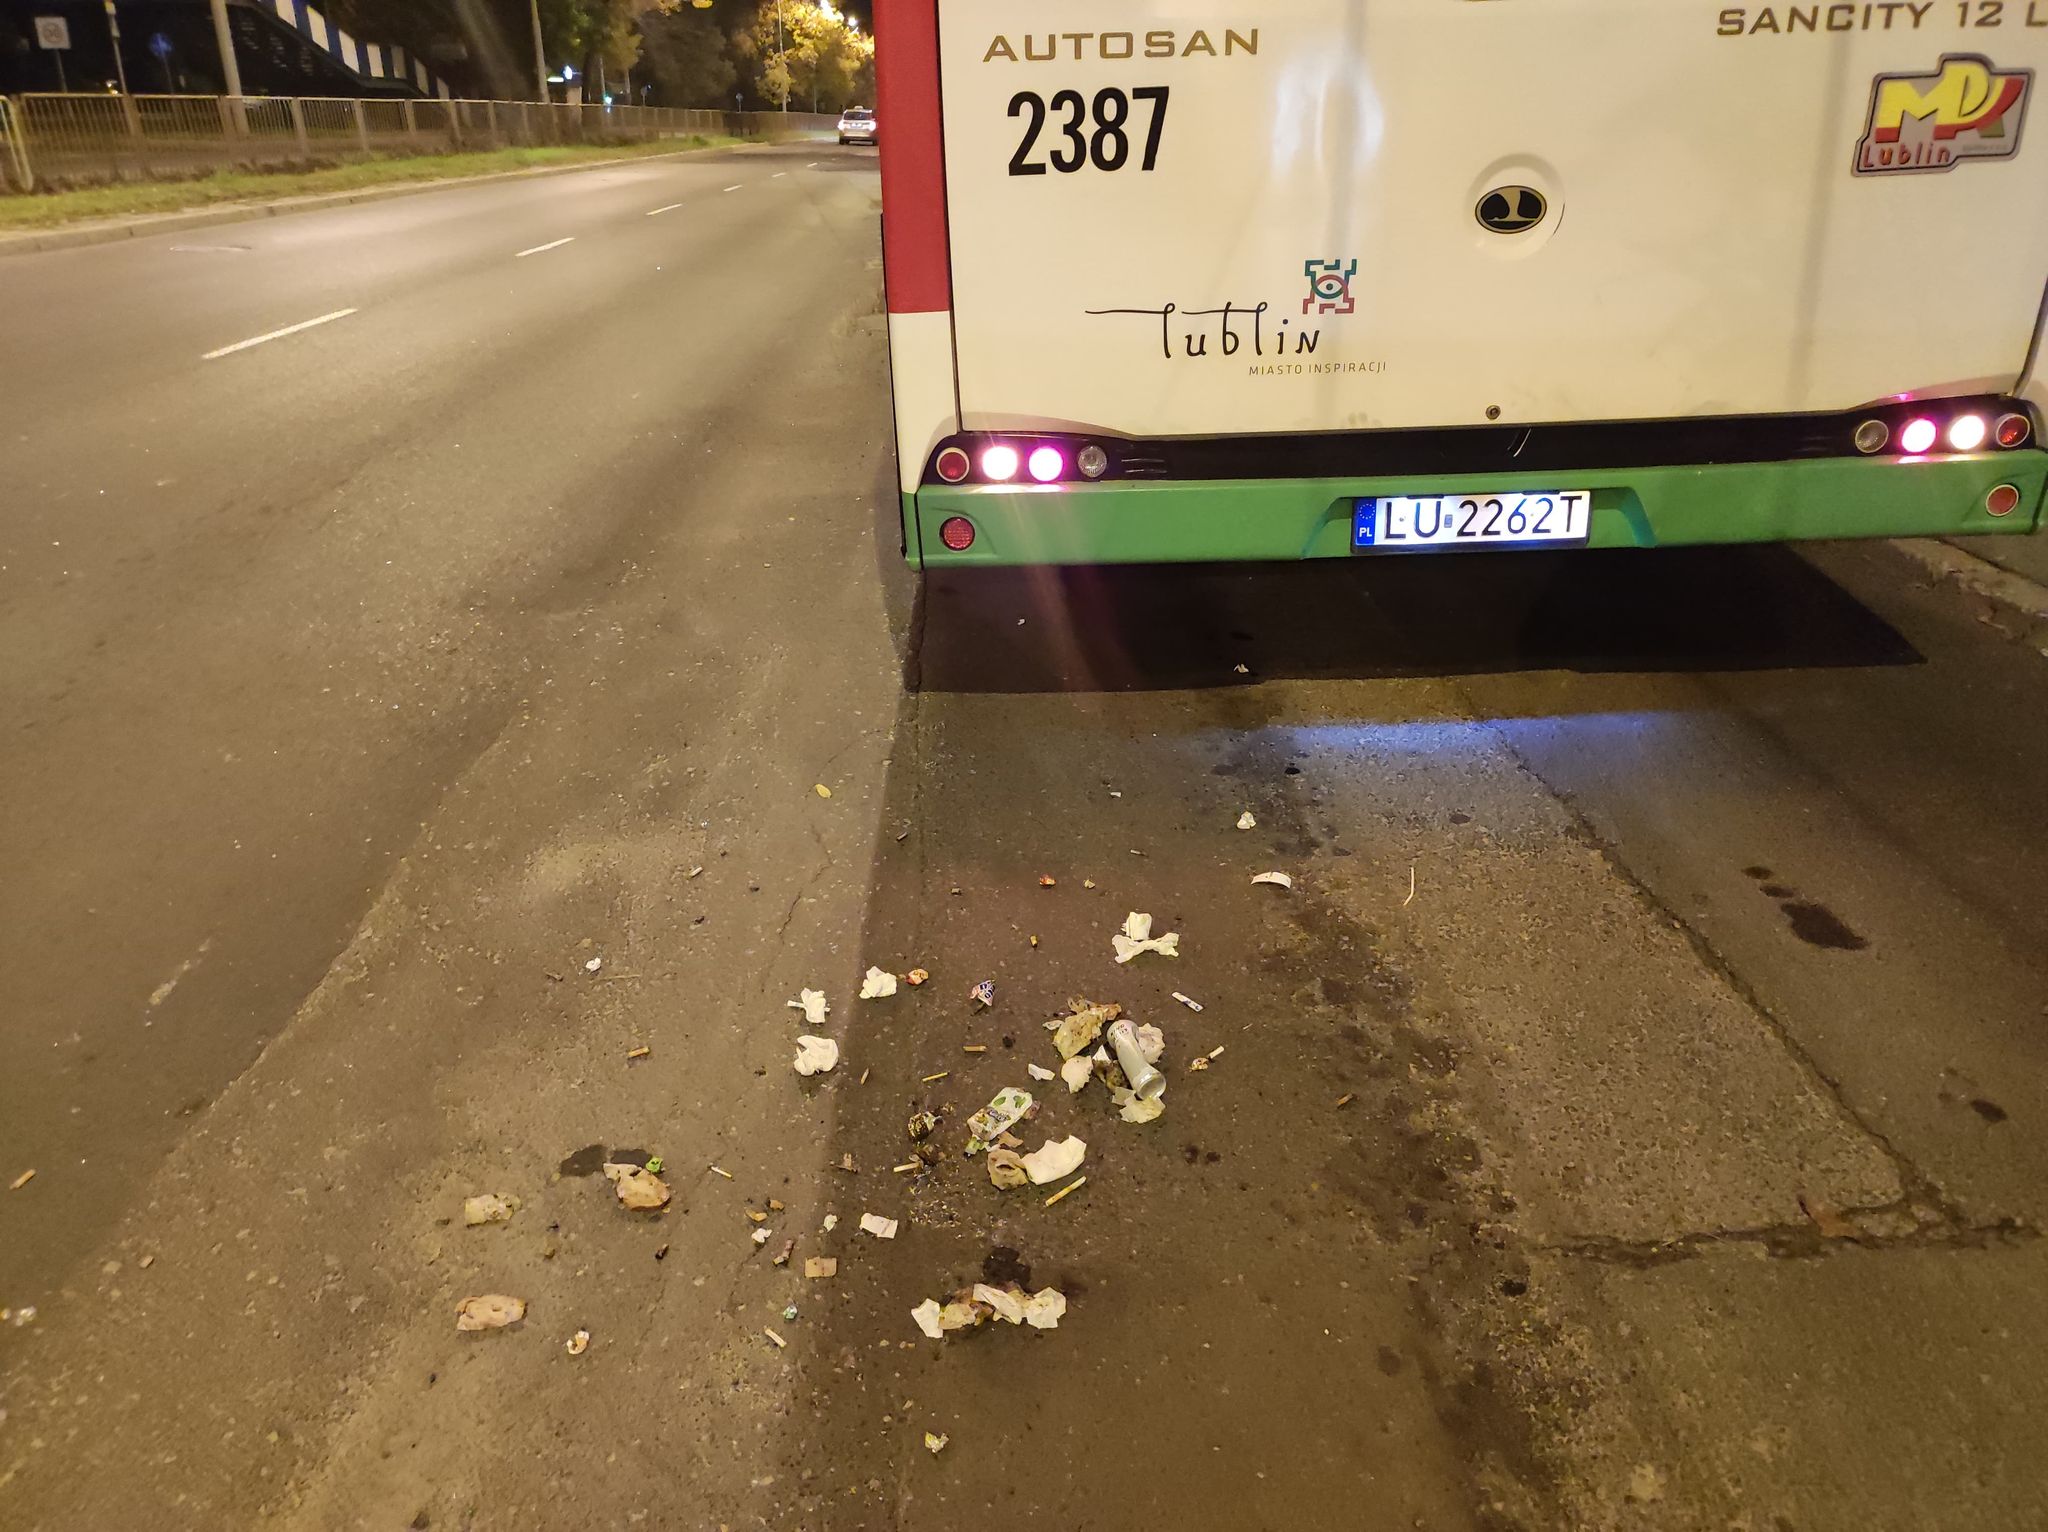 Za przeciwnika obrali sobie autobus, kopali pojazd i rzucili w niego śmietnikiem. Po chwili odwaga im się skończyła